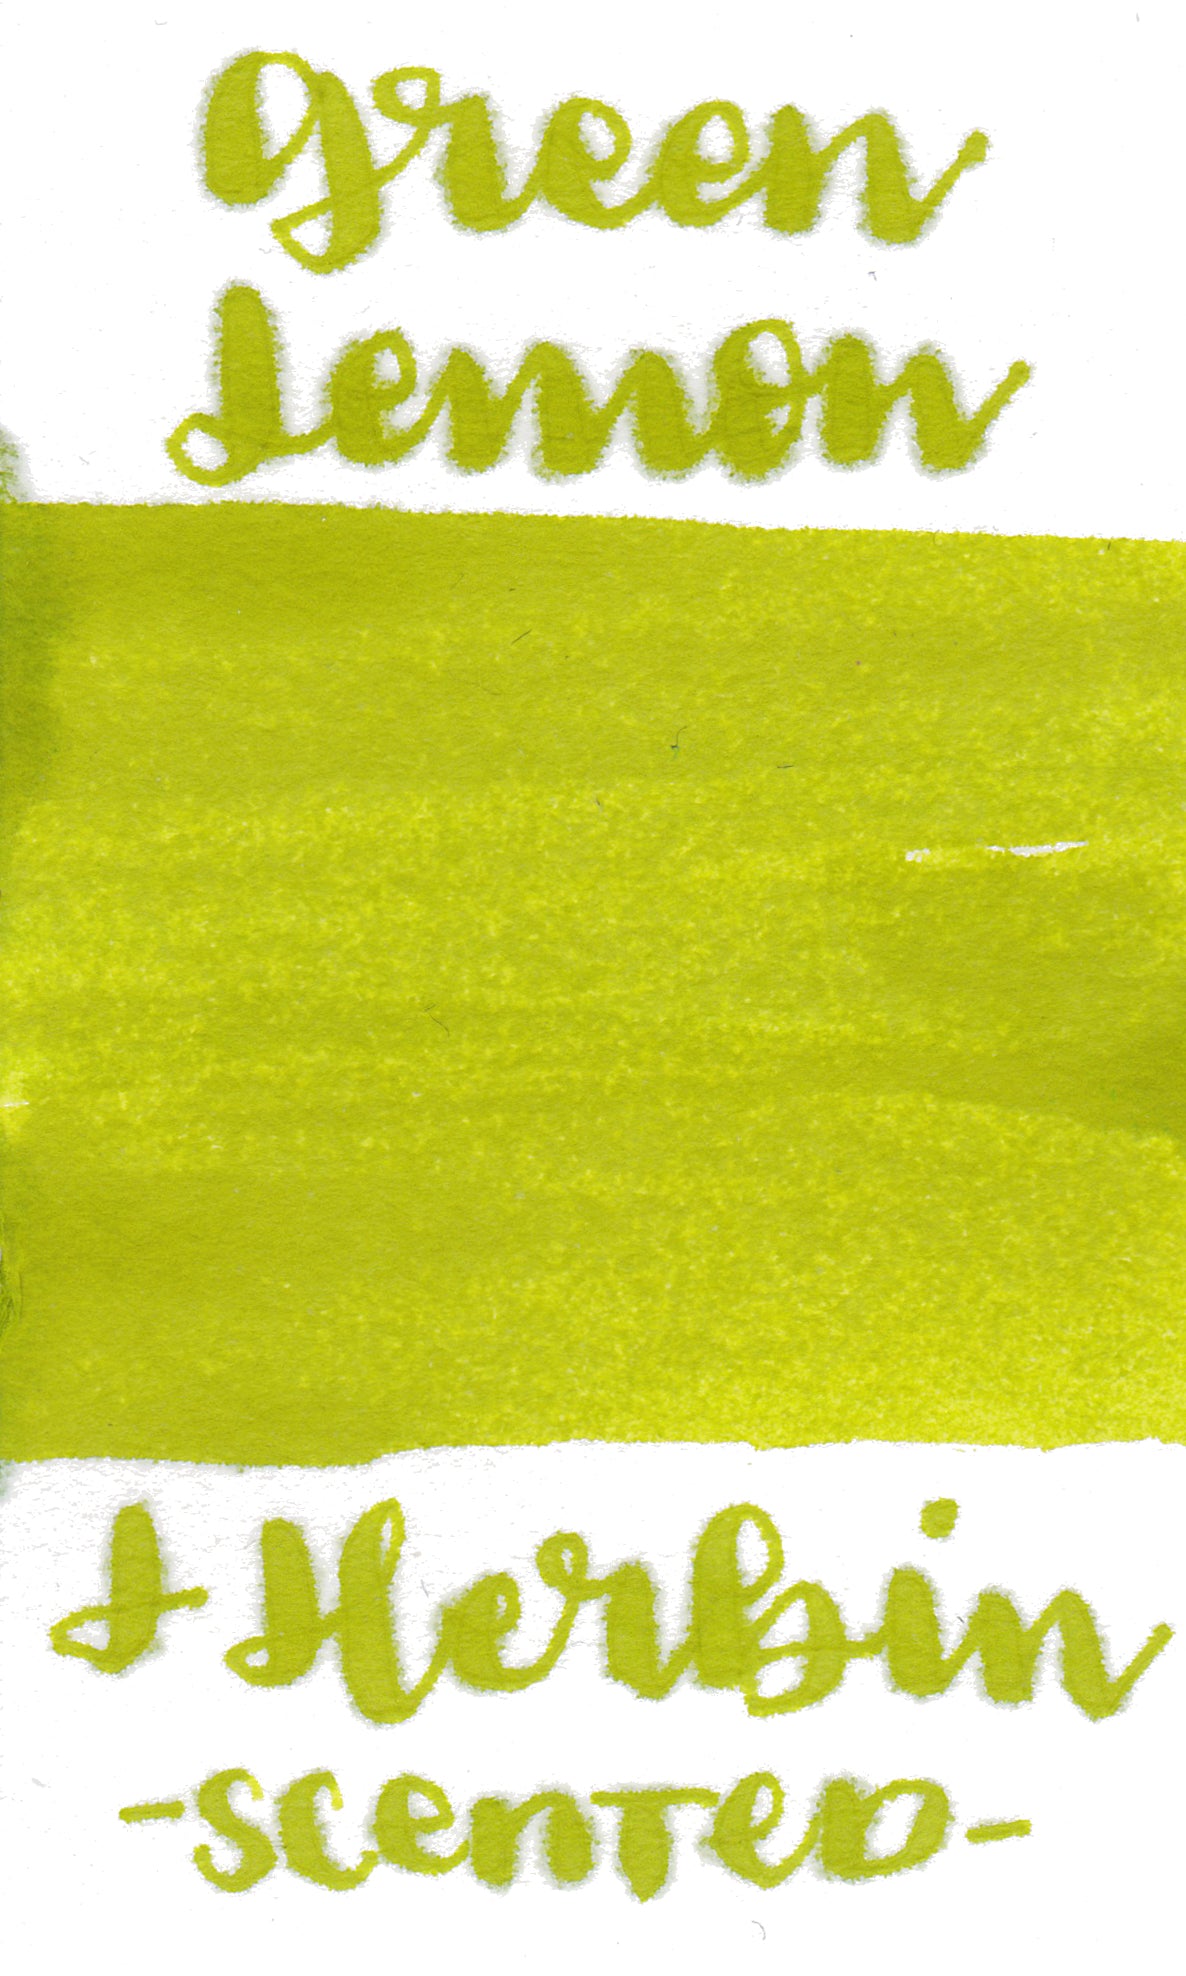 J Herbin Scented Lemon- Green